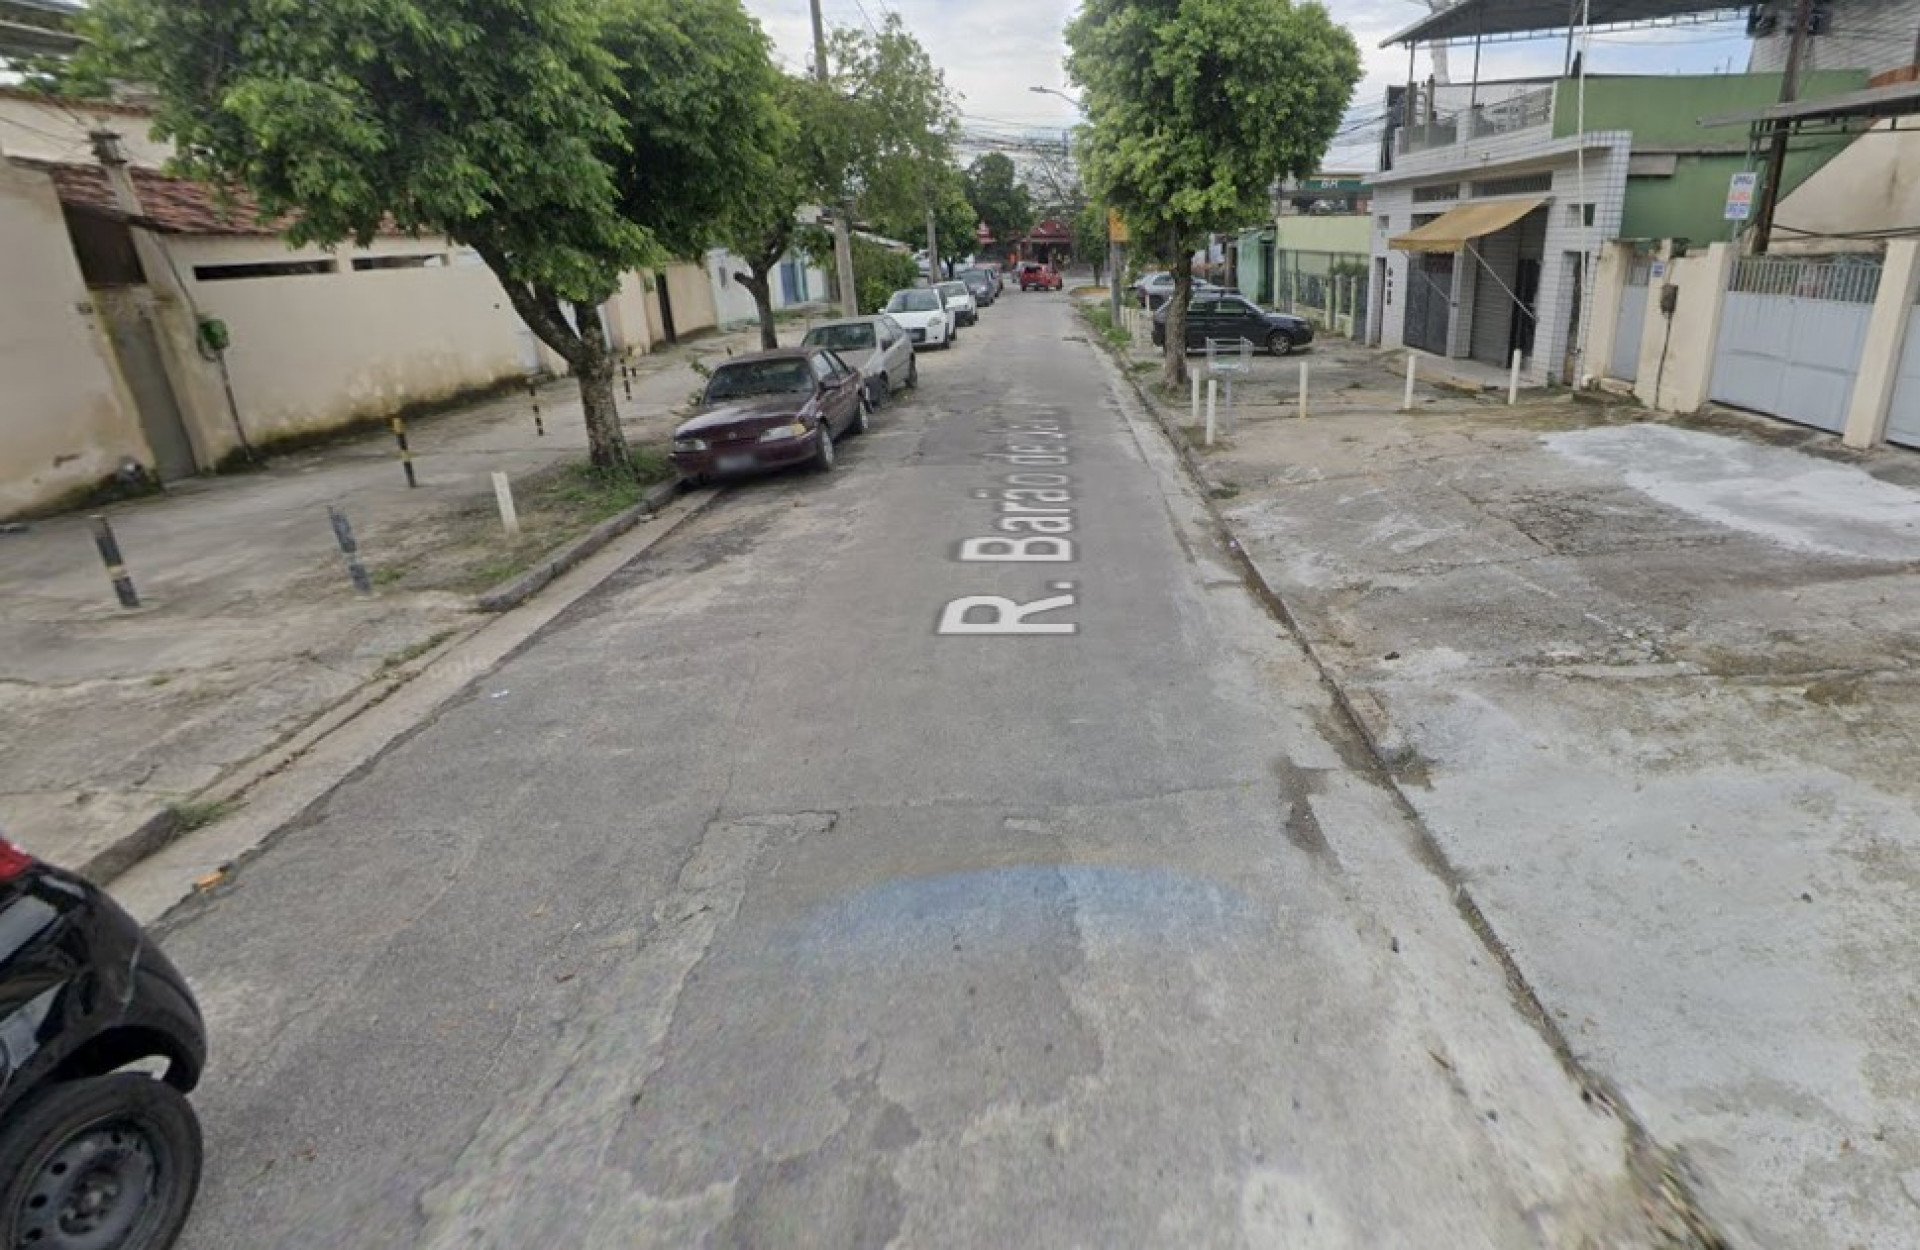 Caso aconteceu na Rua Barão de Jacuí, em Oswaldo Cruz, próximo ao Parque de Madureira - Reprodução